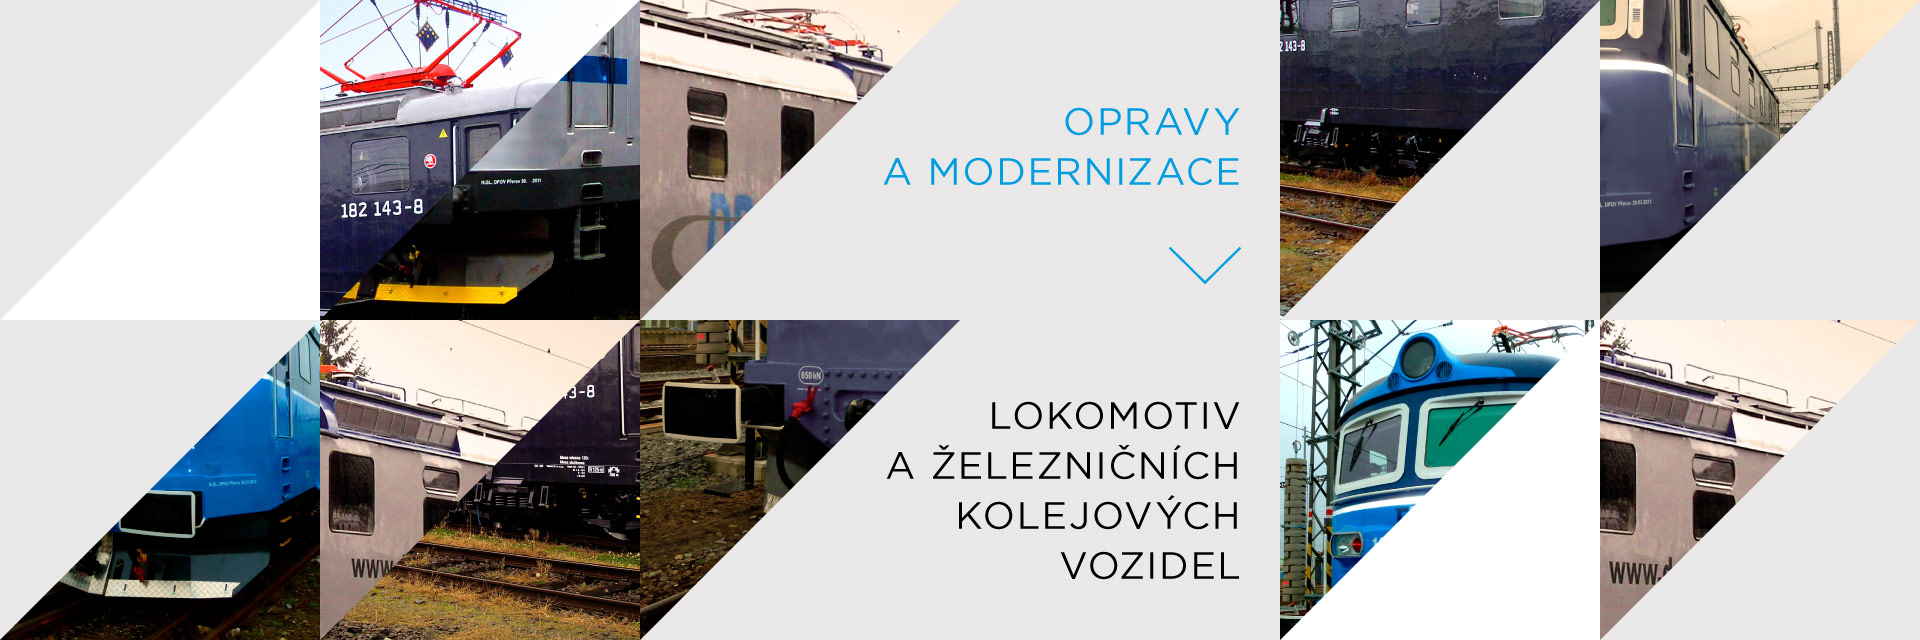 opravy a modernizace lokomotiv a železničních klejových vozidel